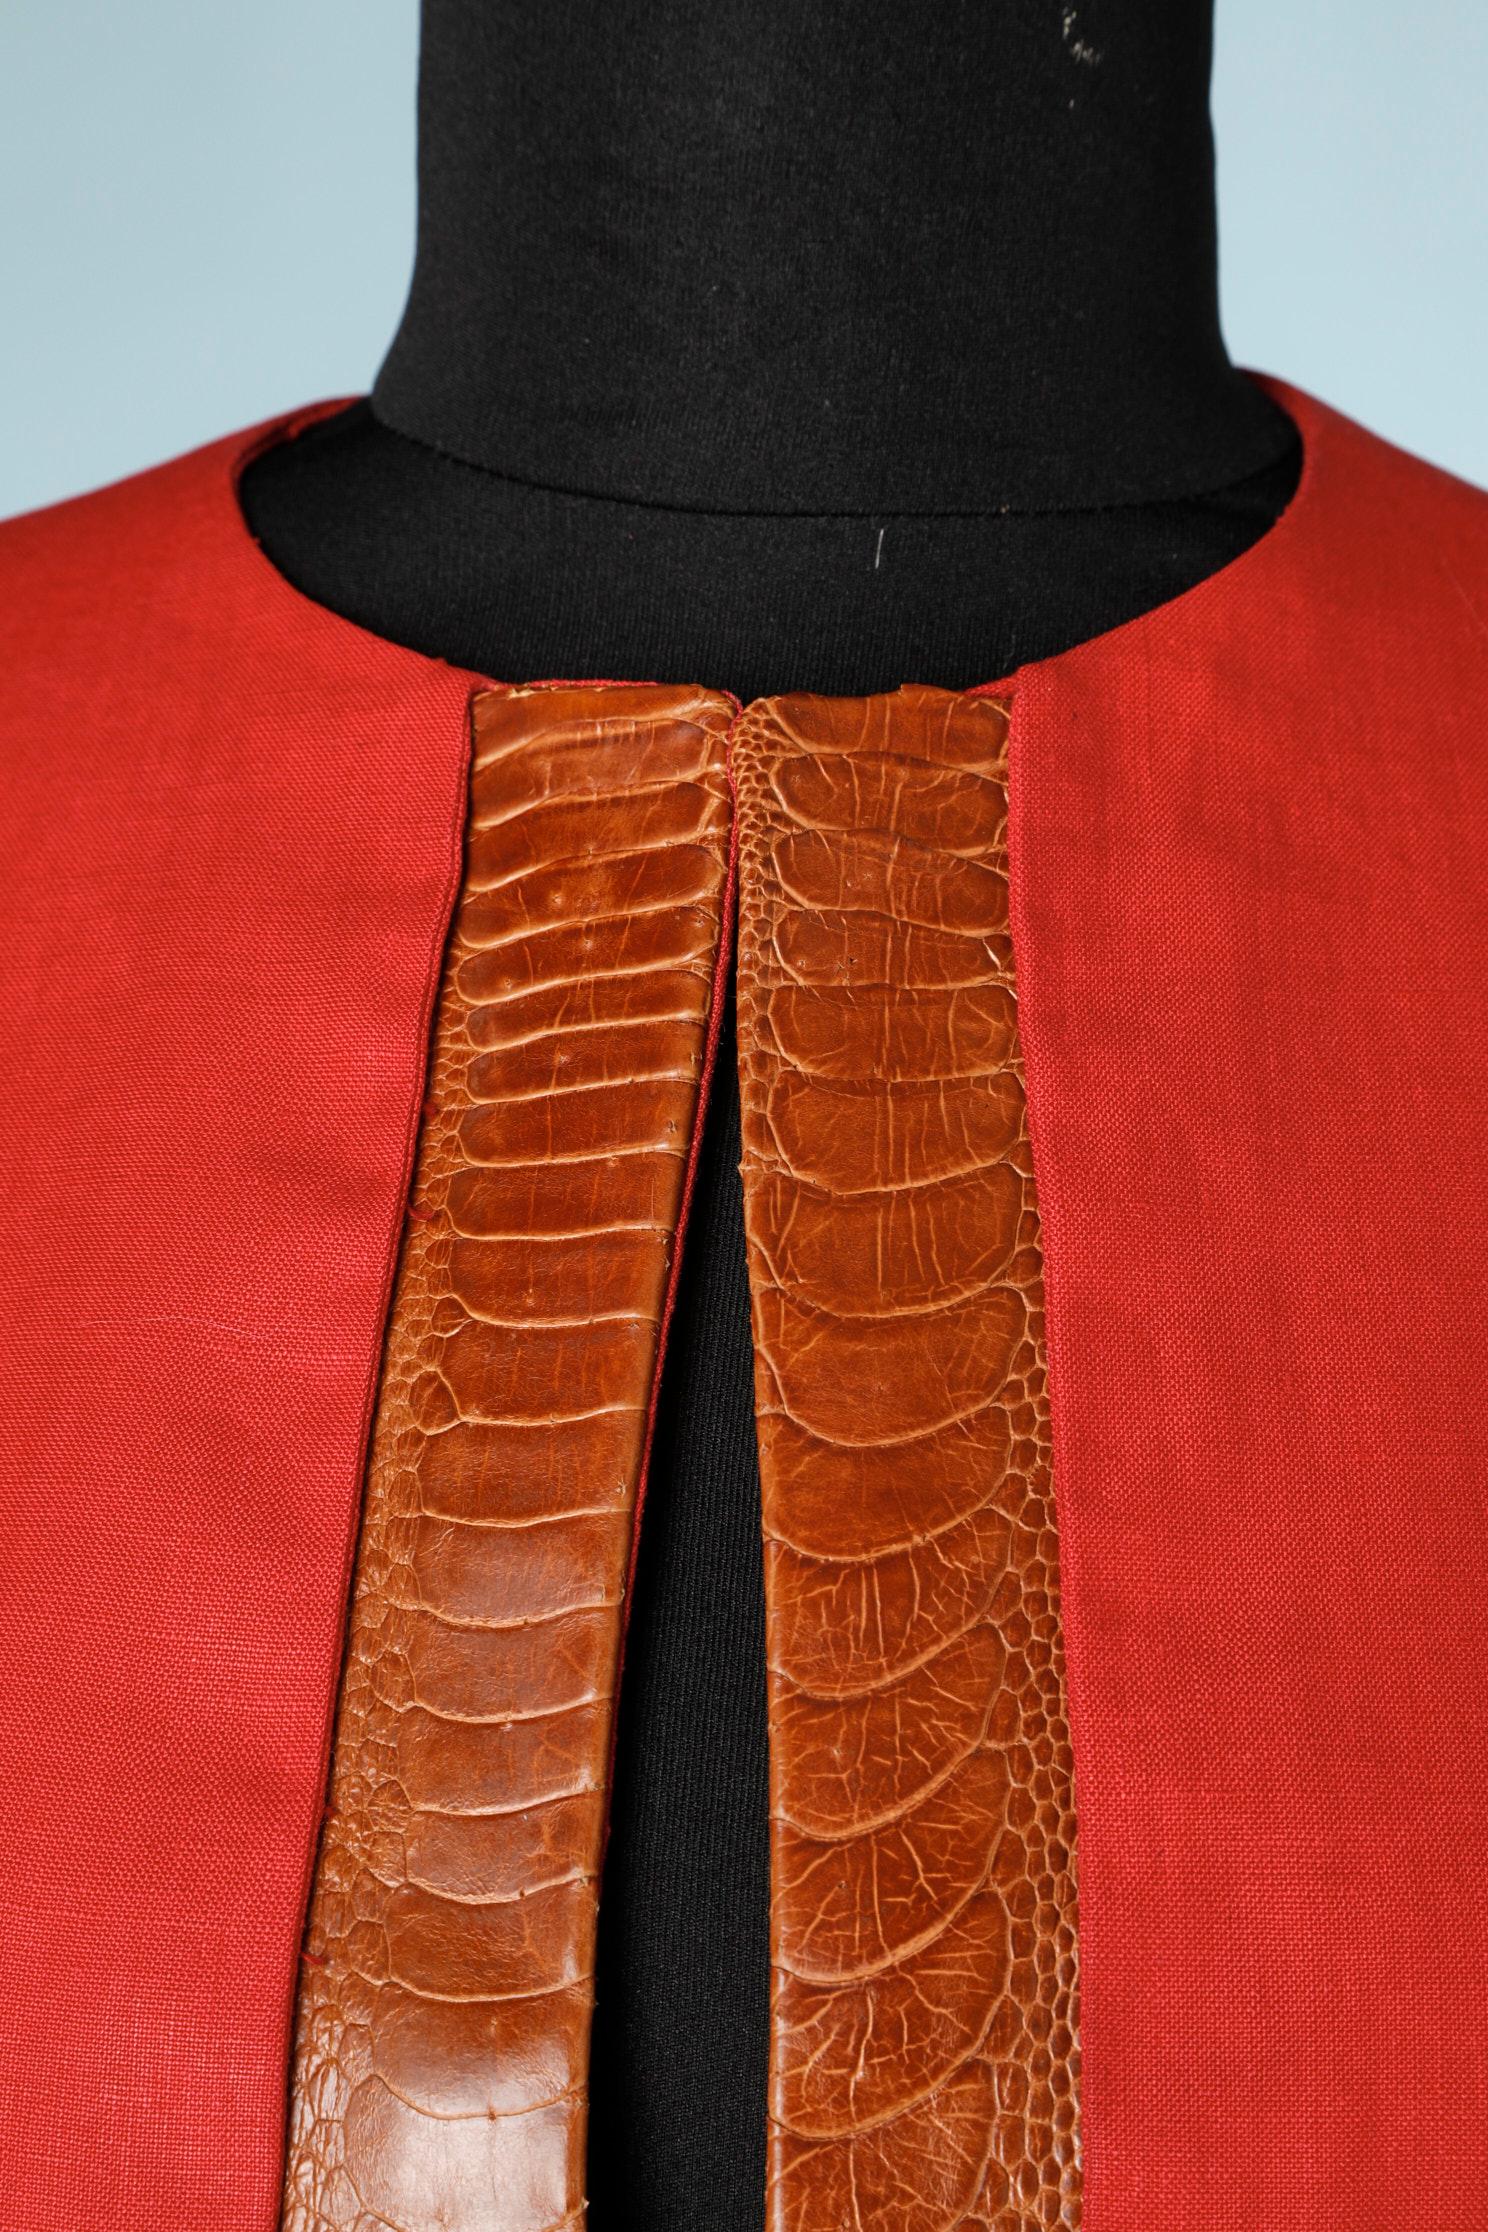 Veste : veste en lin rouge bord à bord avec une partie en peau de crocodile sur le revers. Pas de bouton, pas de doublure.
Légères traces de transpiration sous l'aisselle droite et légère tache sur l'épaule droite.

La maison Lecoanet Hemant Couture